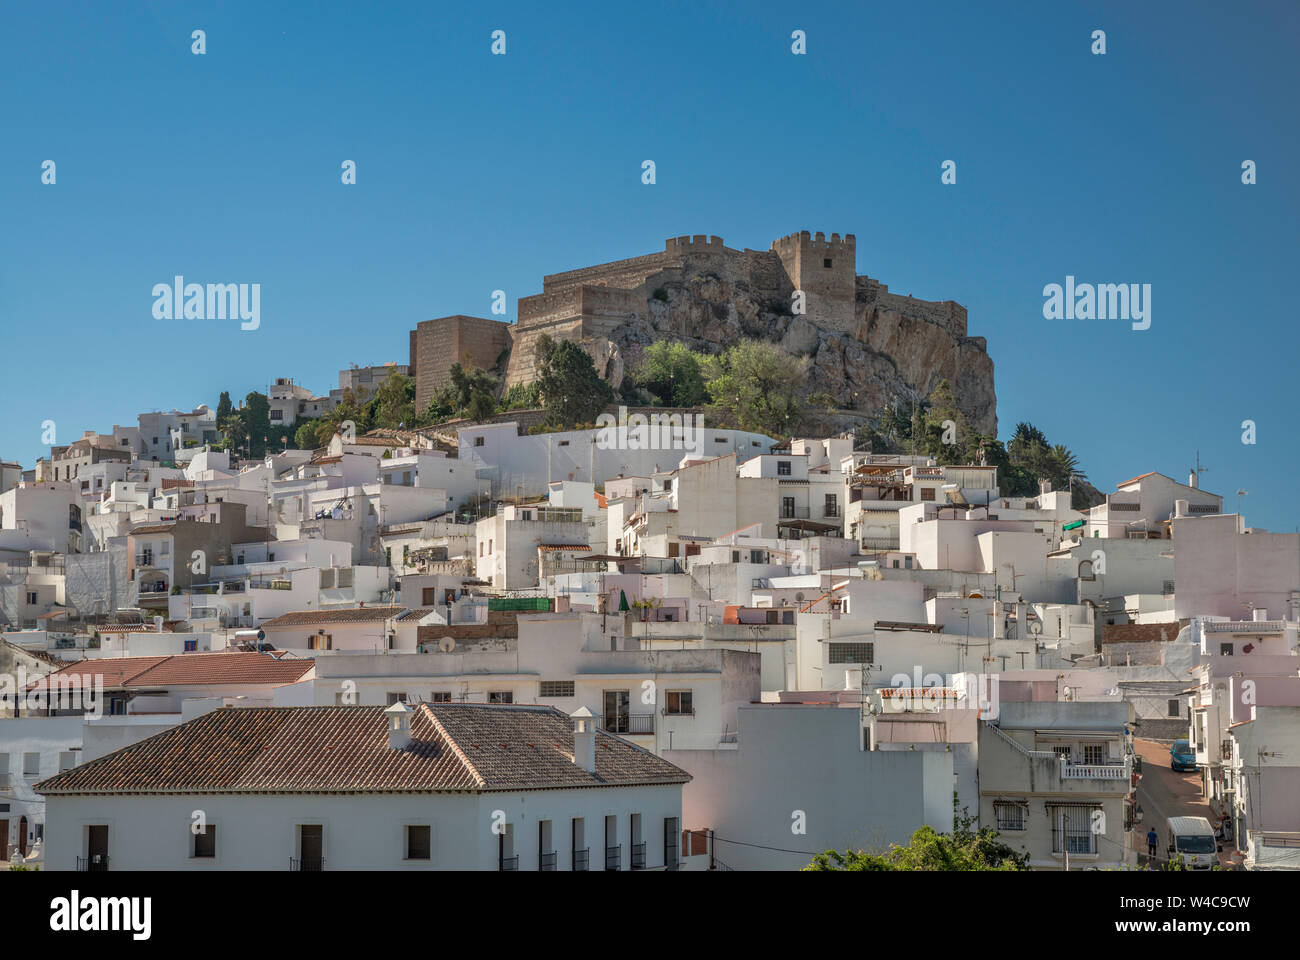 Castillo de Salobreña, 10th century castle over white town of Salobreña, Costa Tropical, Granada province, Andalusia, Spain Stock Photo